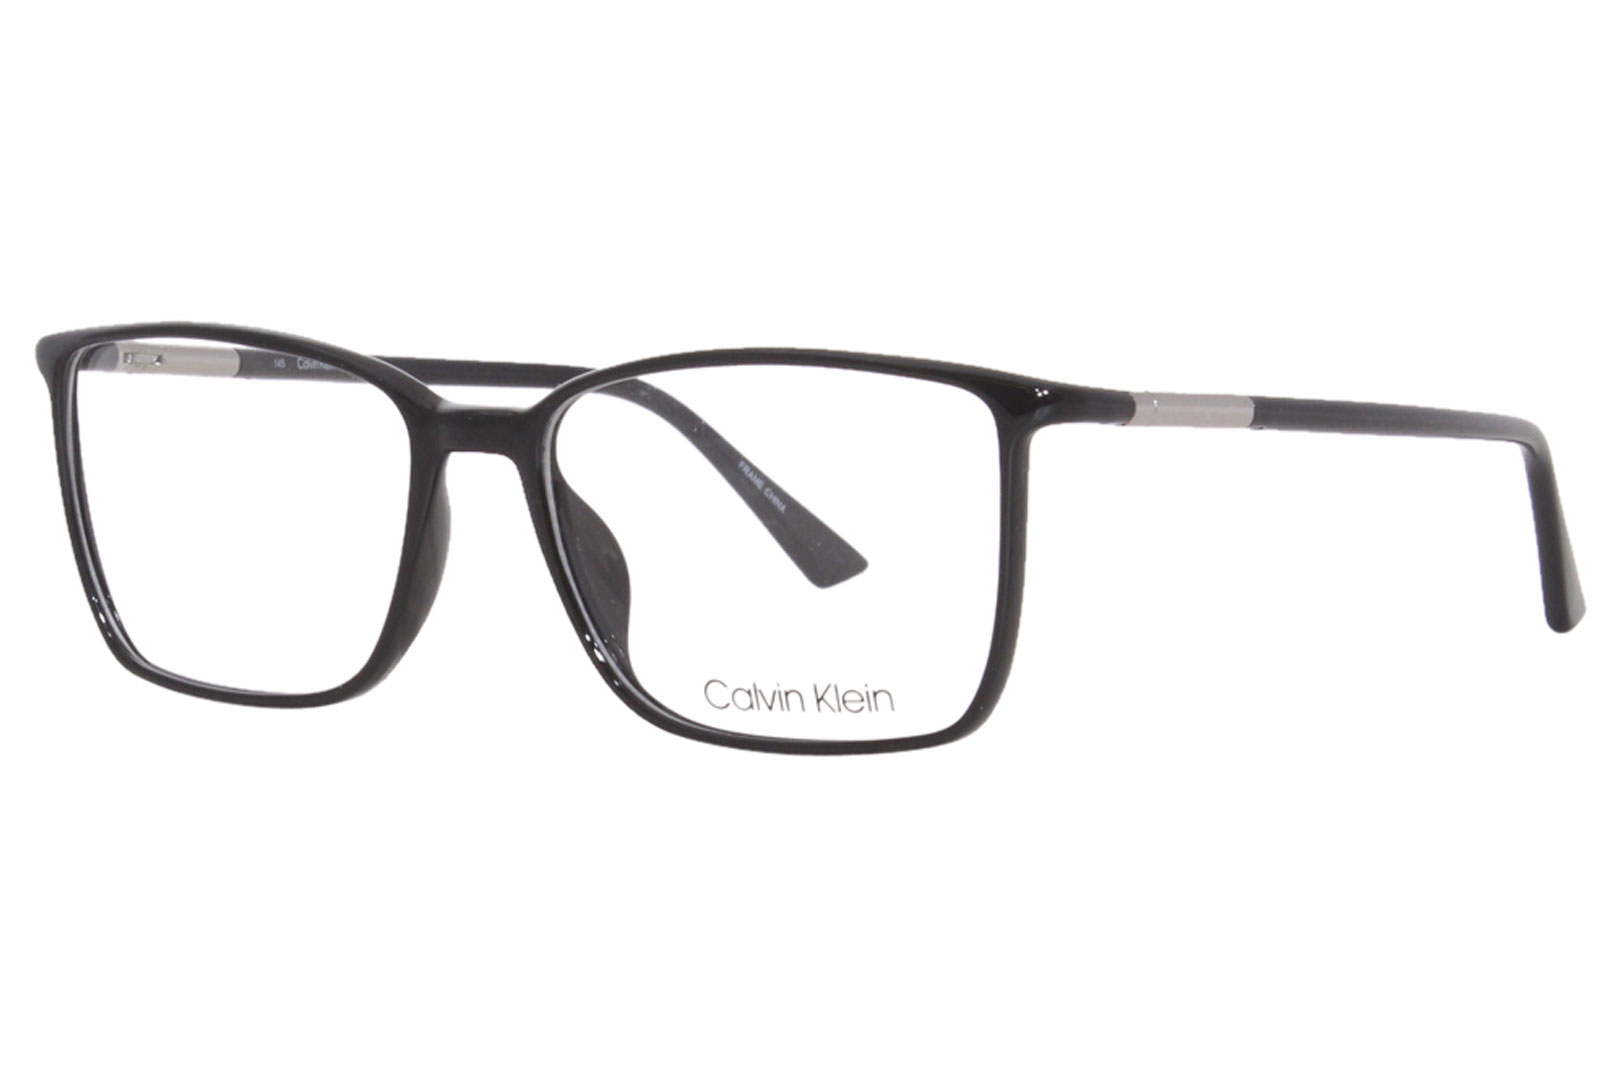 Calvin Klein CK22508 Eyeglasses Men's Full Rim Rectangle Shape ...